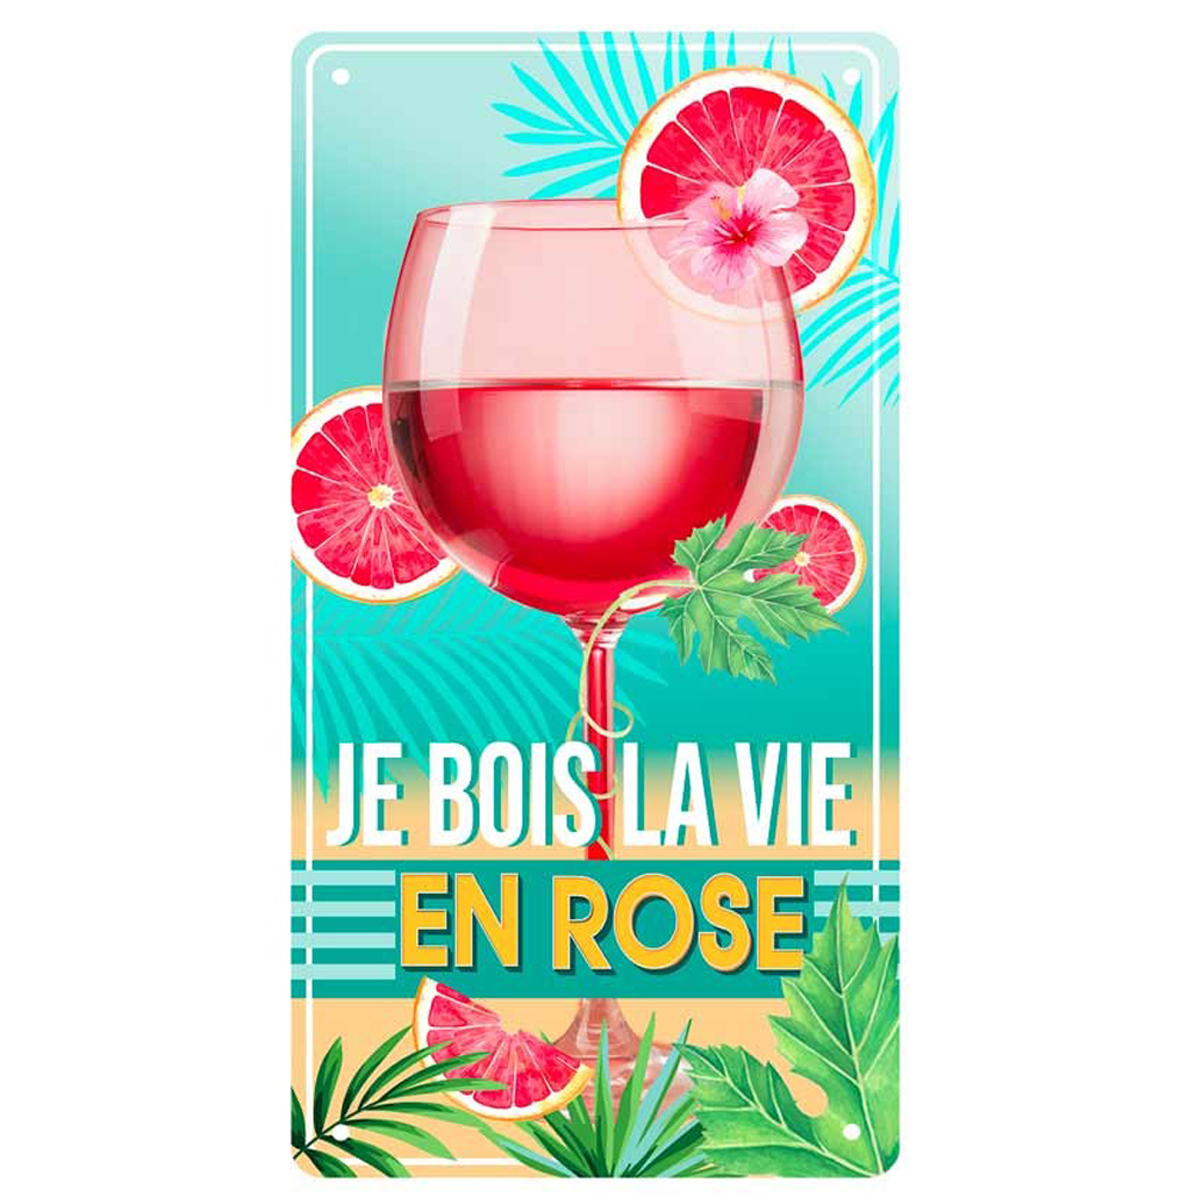 Plaque métal \'Je bois la vie en rose \' turquoise rose - 305x155 cm - [Q6547]